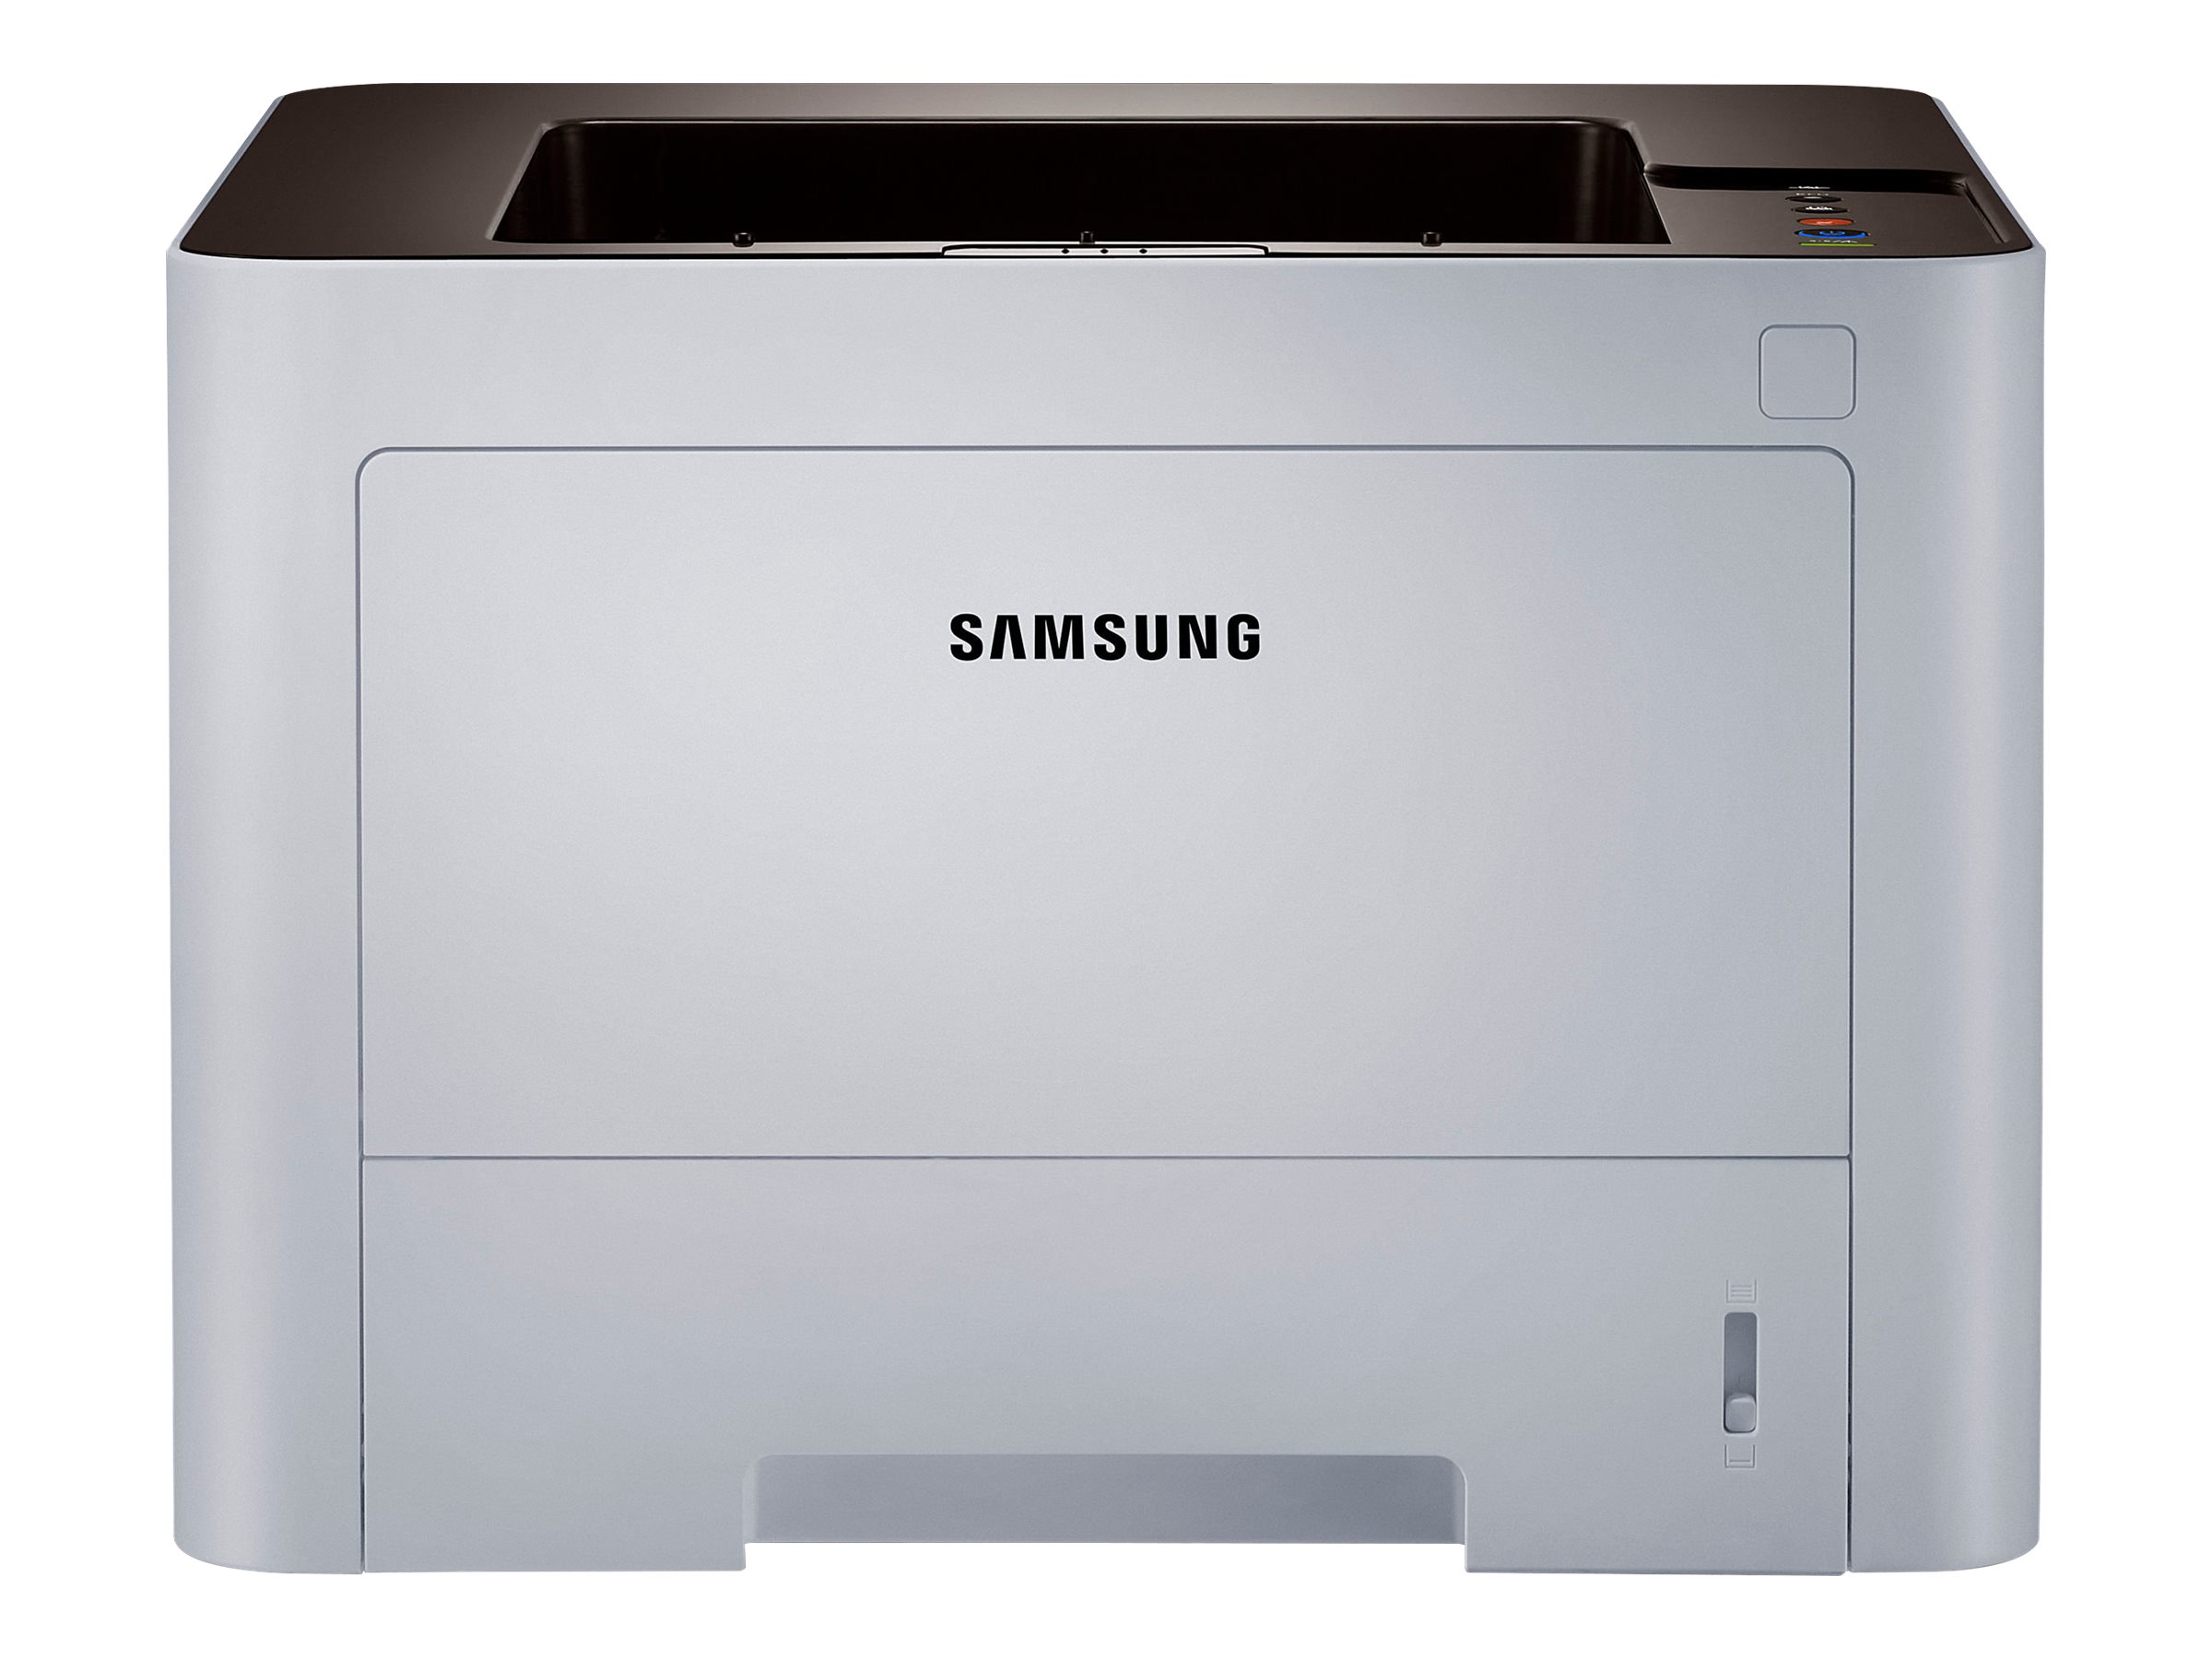 Лазерные принтеры samsung купить. Принтер Samsung SL-m4020nd. Samsung PROXPRESS SL-m4020nd. Принтер Samsung PROXPRESS m3820nd. Принтер Samsung PROXPRESS SL-m4020nd.